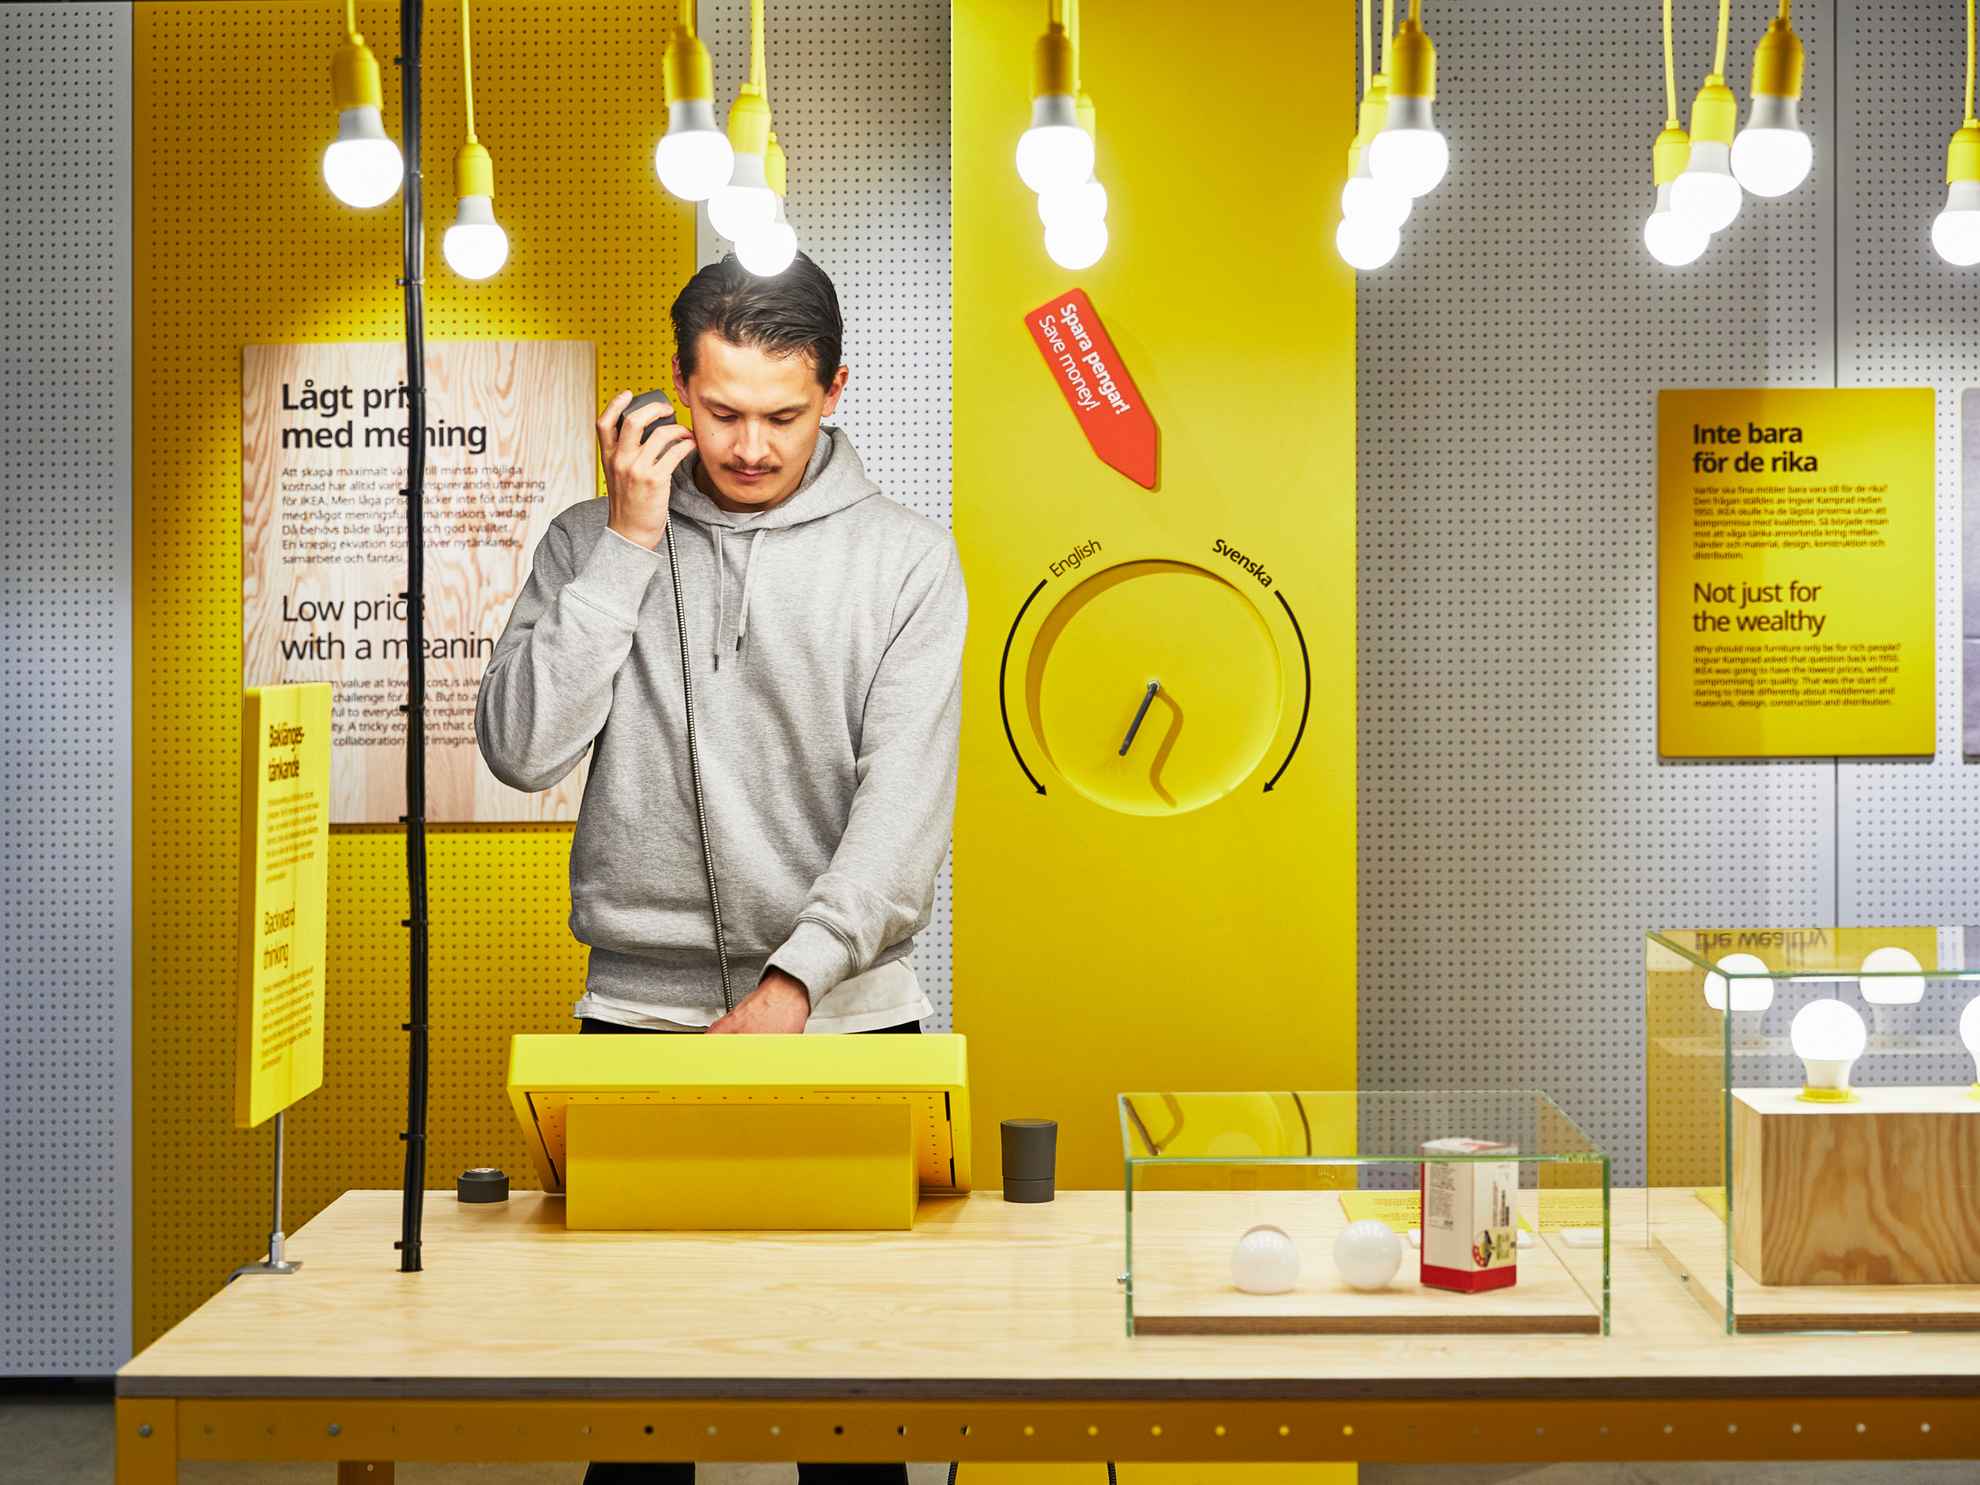 Ein Mann steht an einem Tisch und betrachtet eine gelbe Auslage in einer der Ausstellungen von Ikea. Von der Decke hängen Glühbirnen und auf dem Tisch stehen Glaskästen mit Glühbirnen darin.